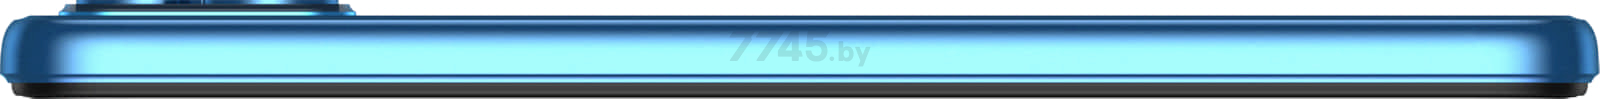 Планшет DOOGEE T10 8GB/128GB LTE Neptune Blue - Фото 9